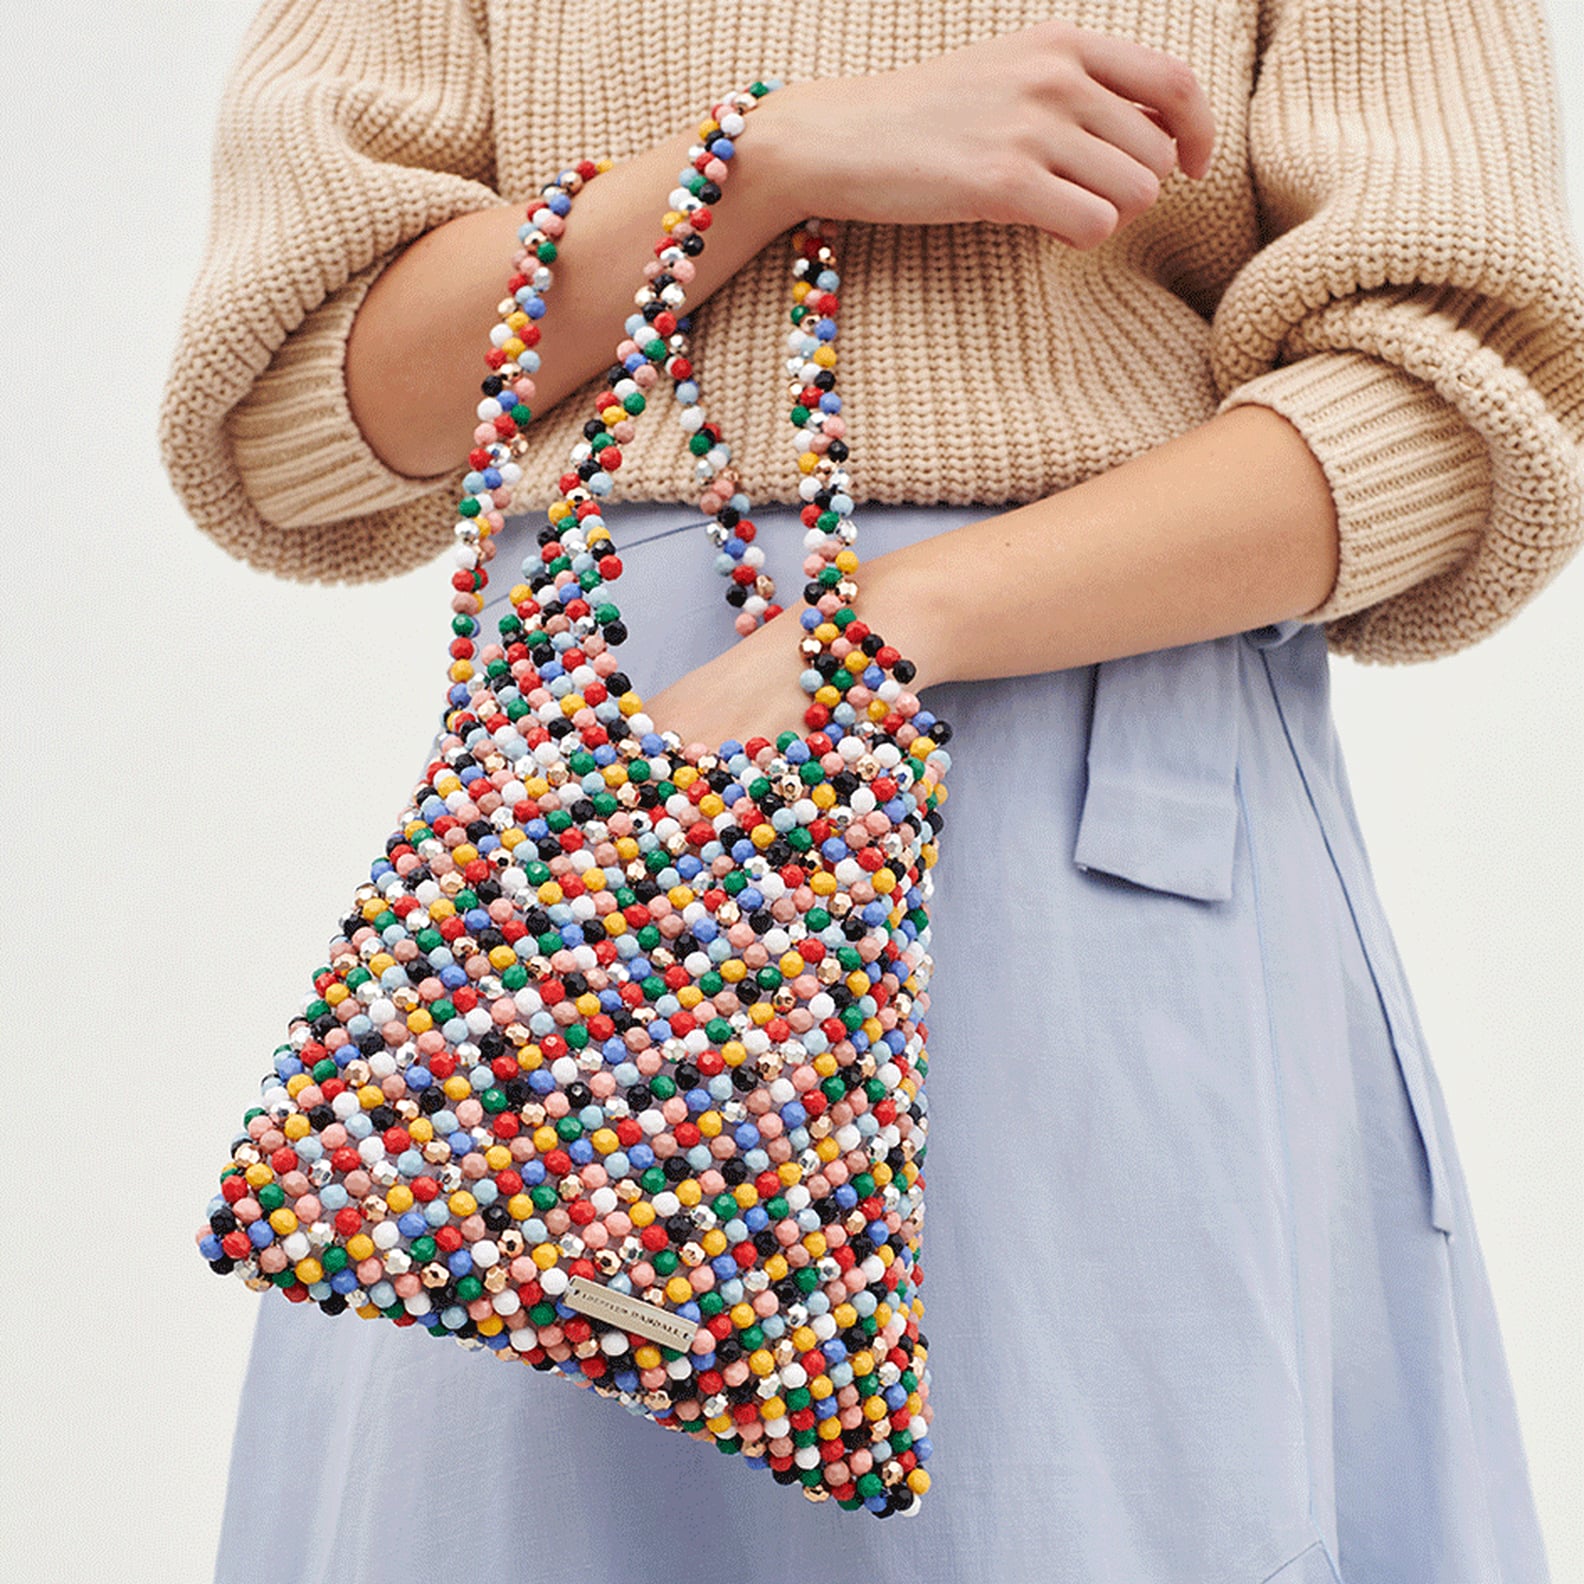 Best Rainbow Bags | POPSUGAR Fashion